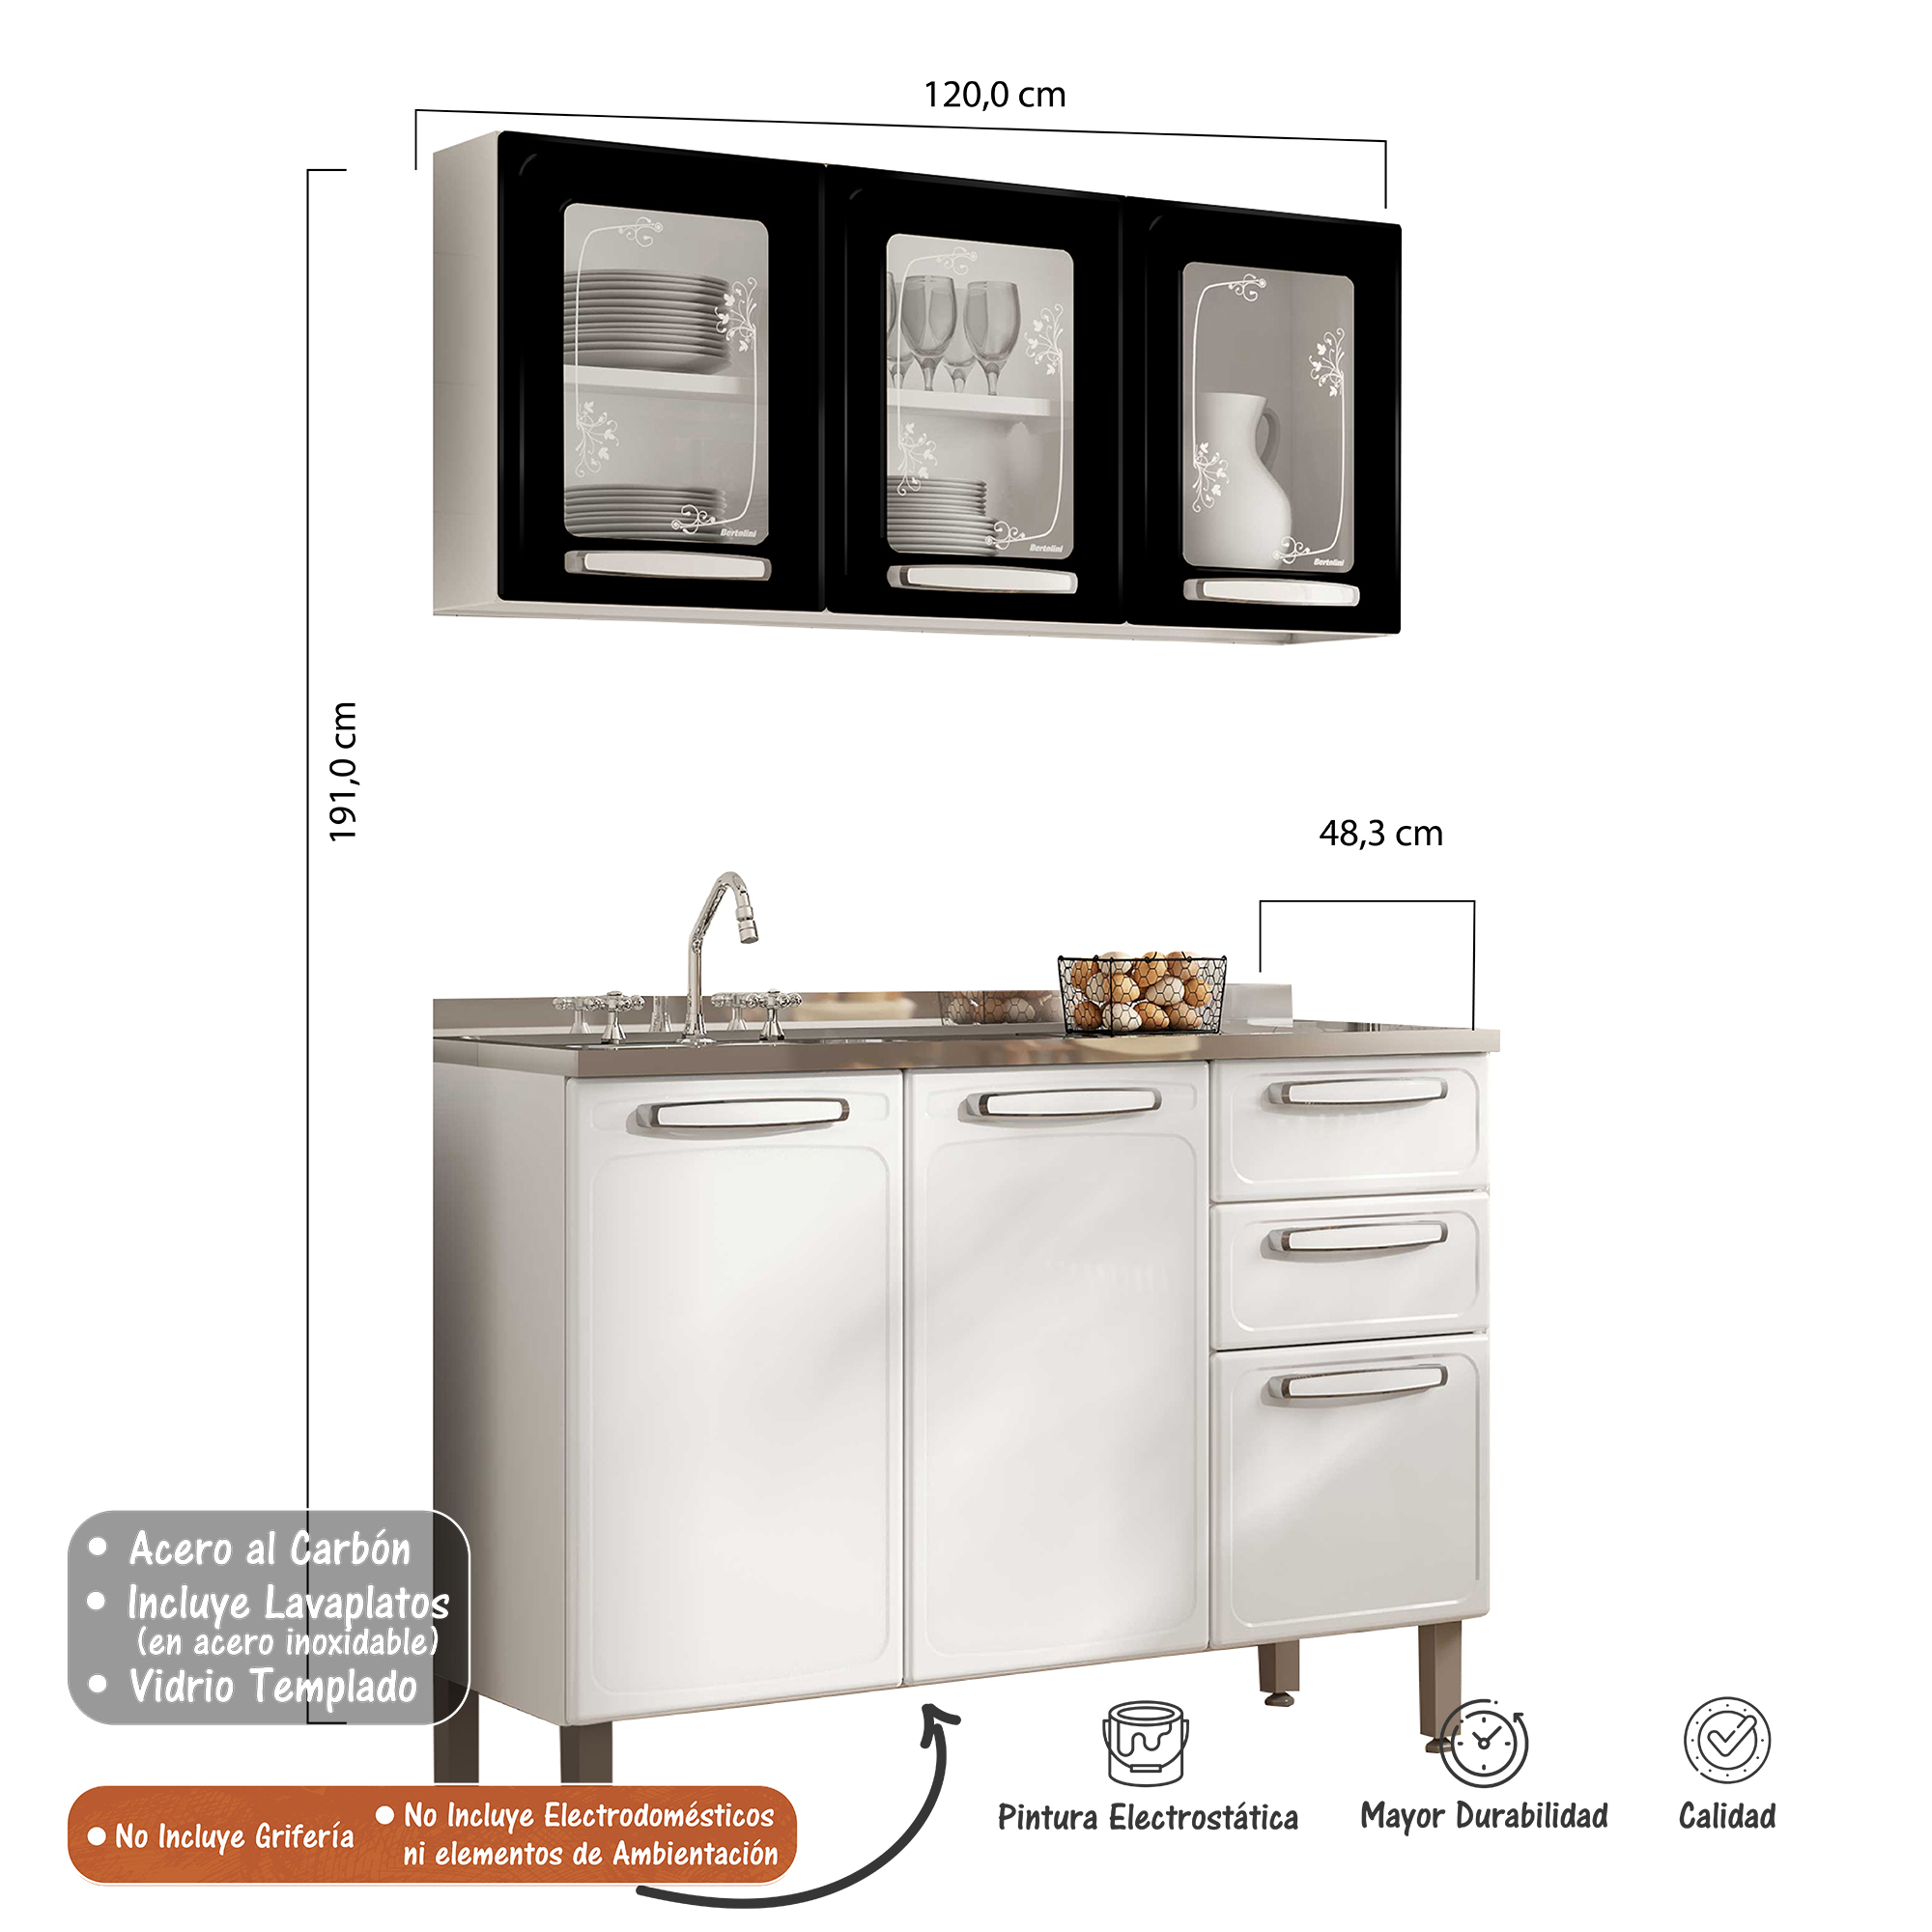 Cocina Integral Bertolini En Acero 1.20m Incluye Lavaplatos Color Negro y Blanco